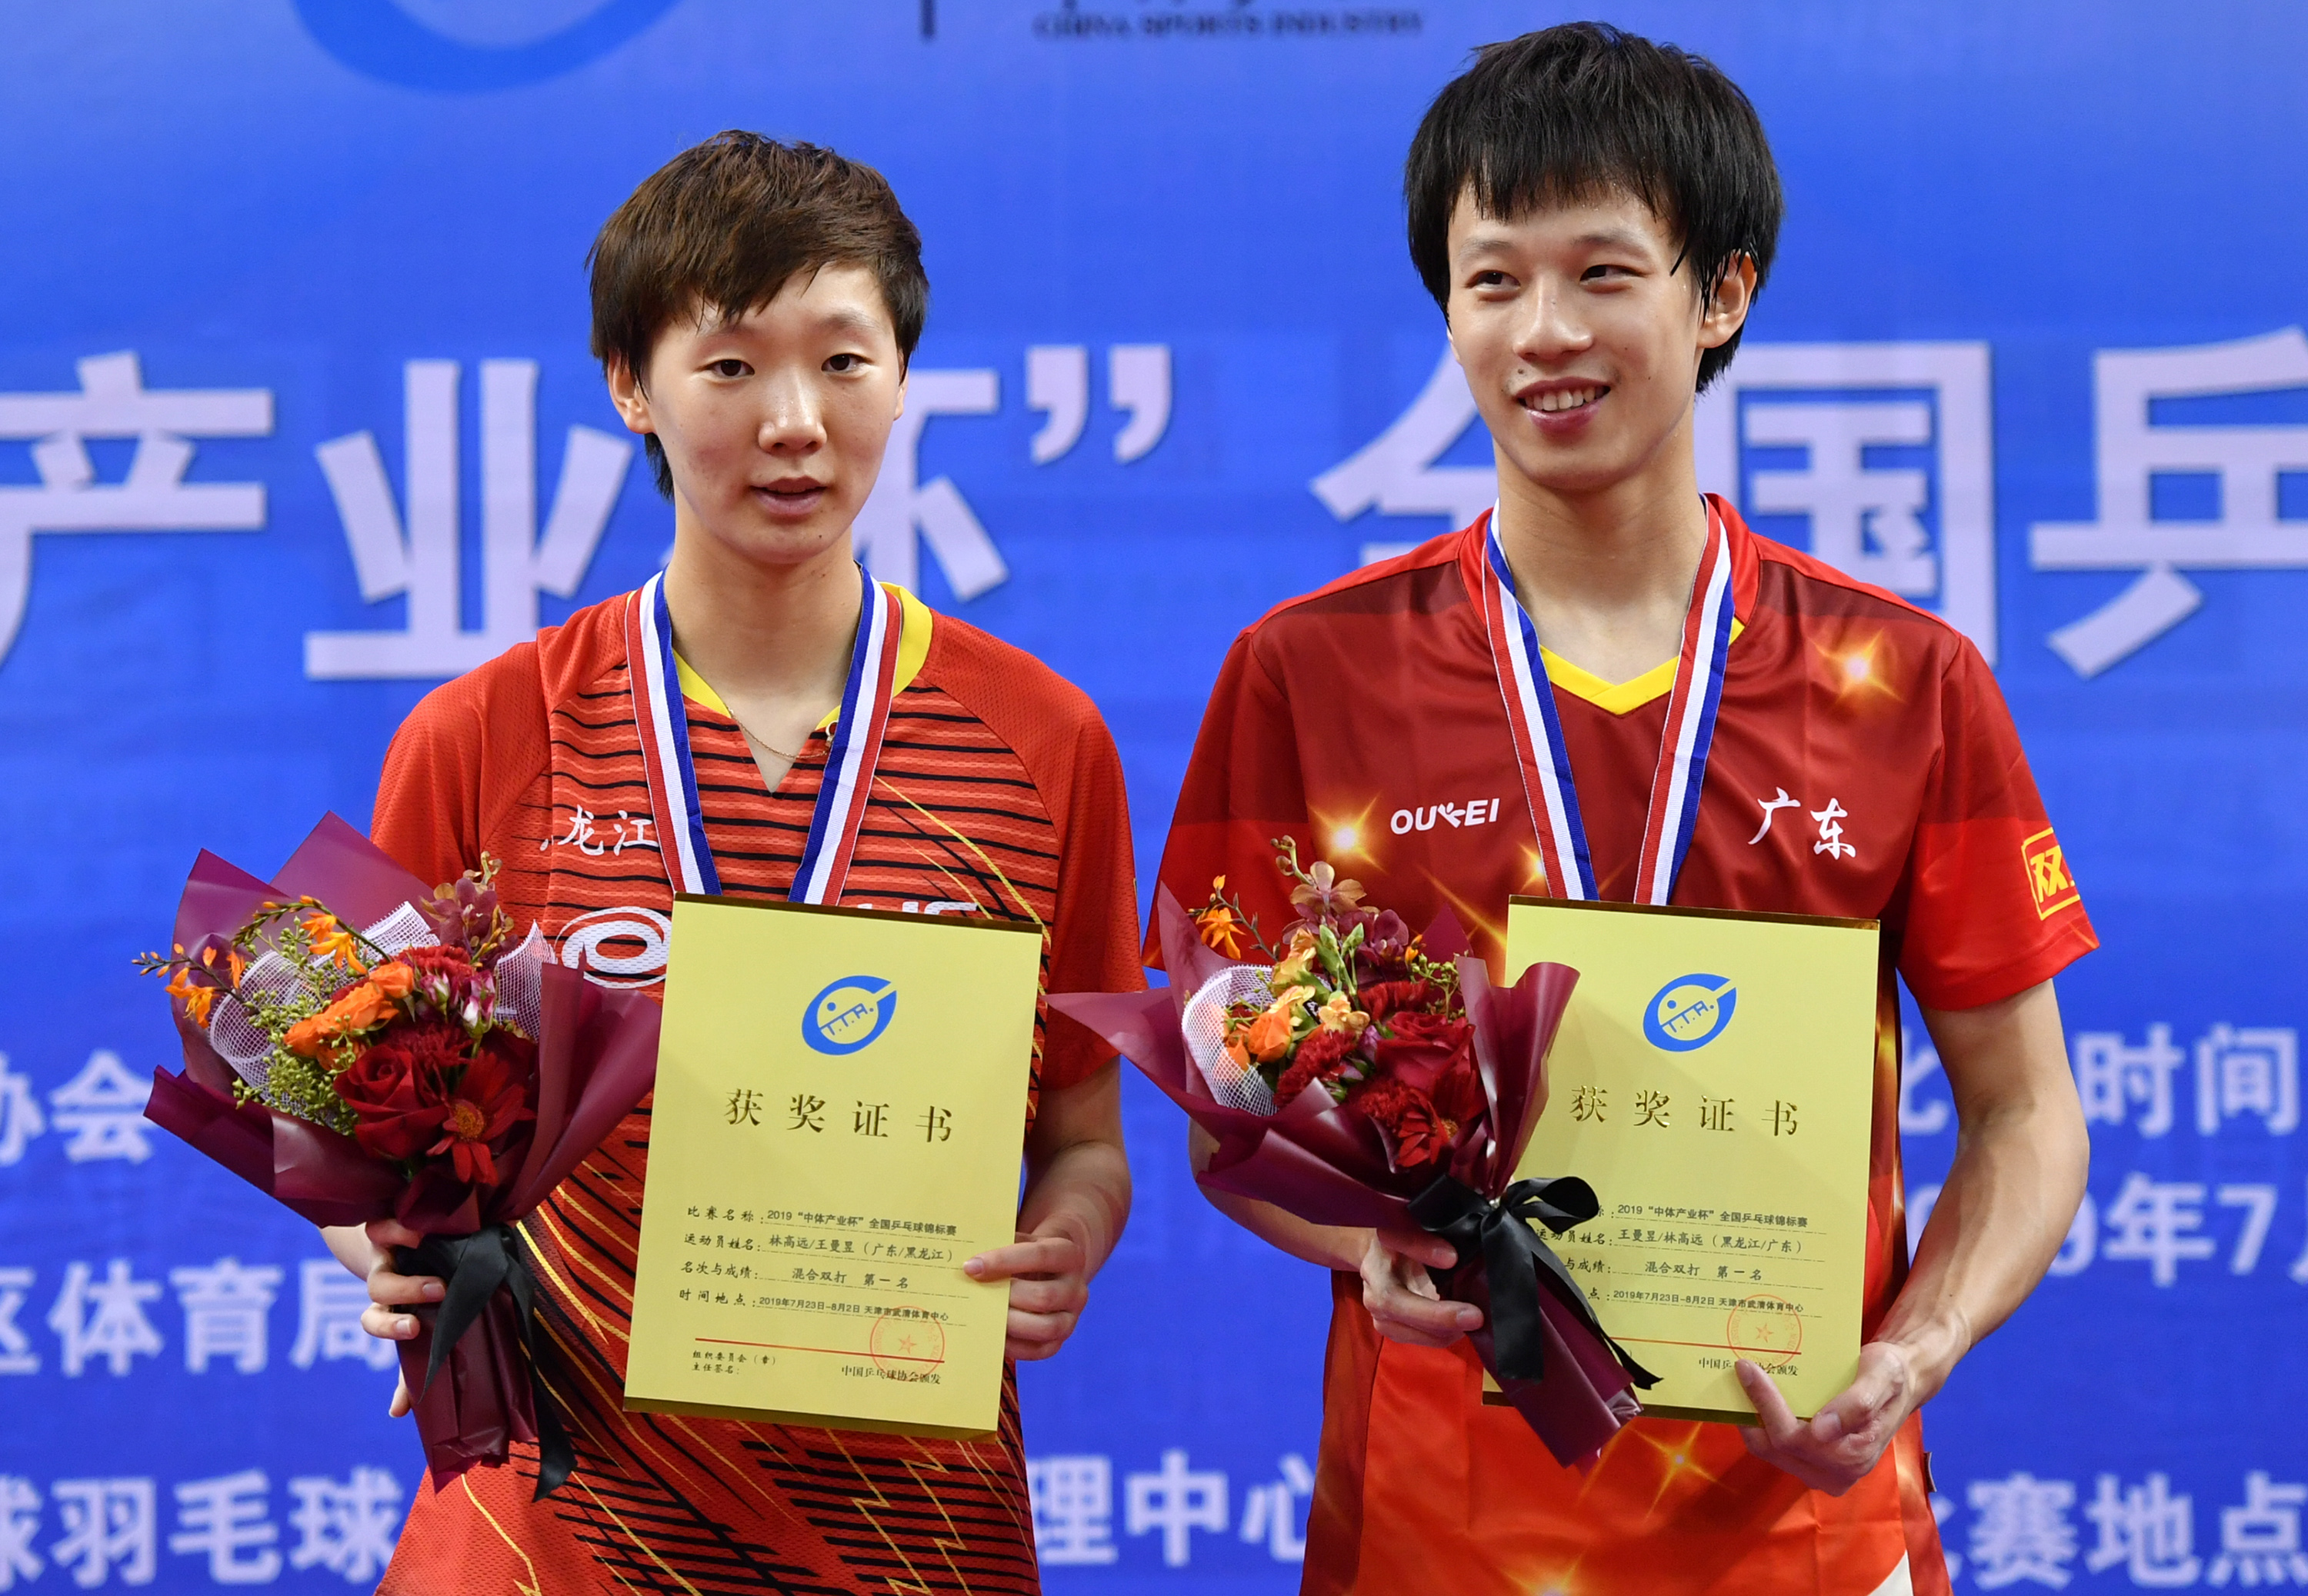 当日,在天津武清举行的2019年全国乒乓球锦标赛混合双打决赛中,林高远